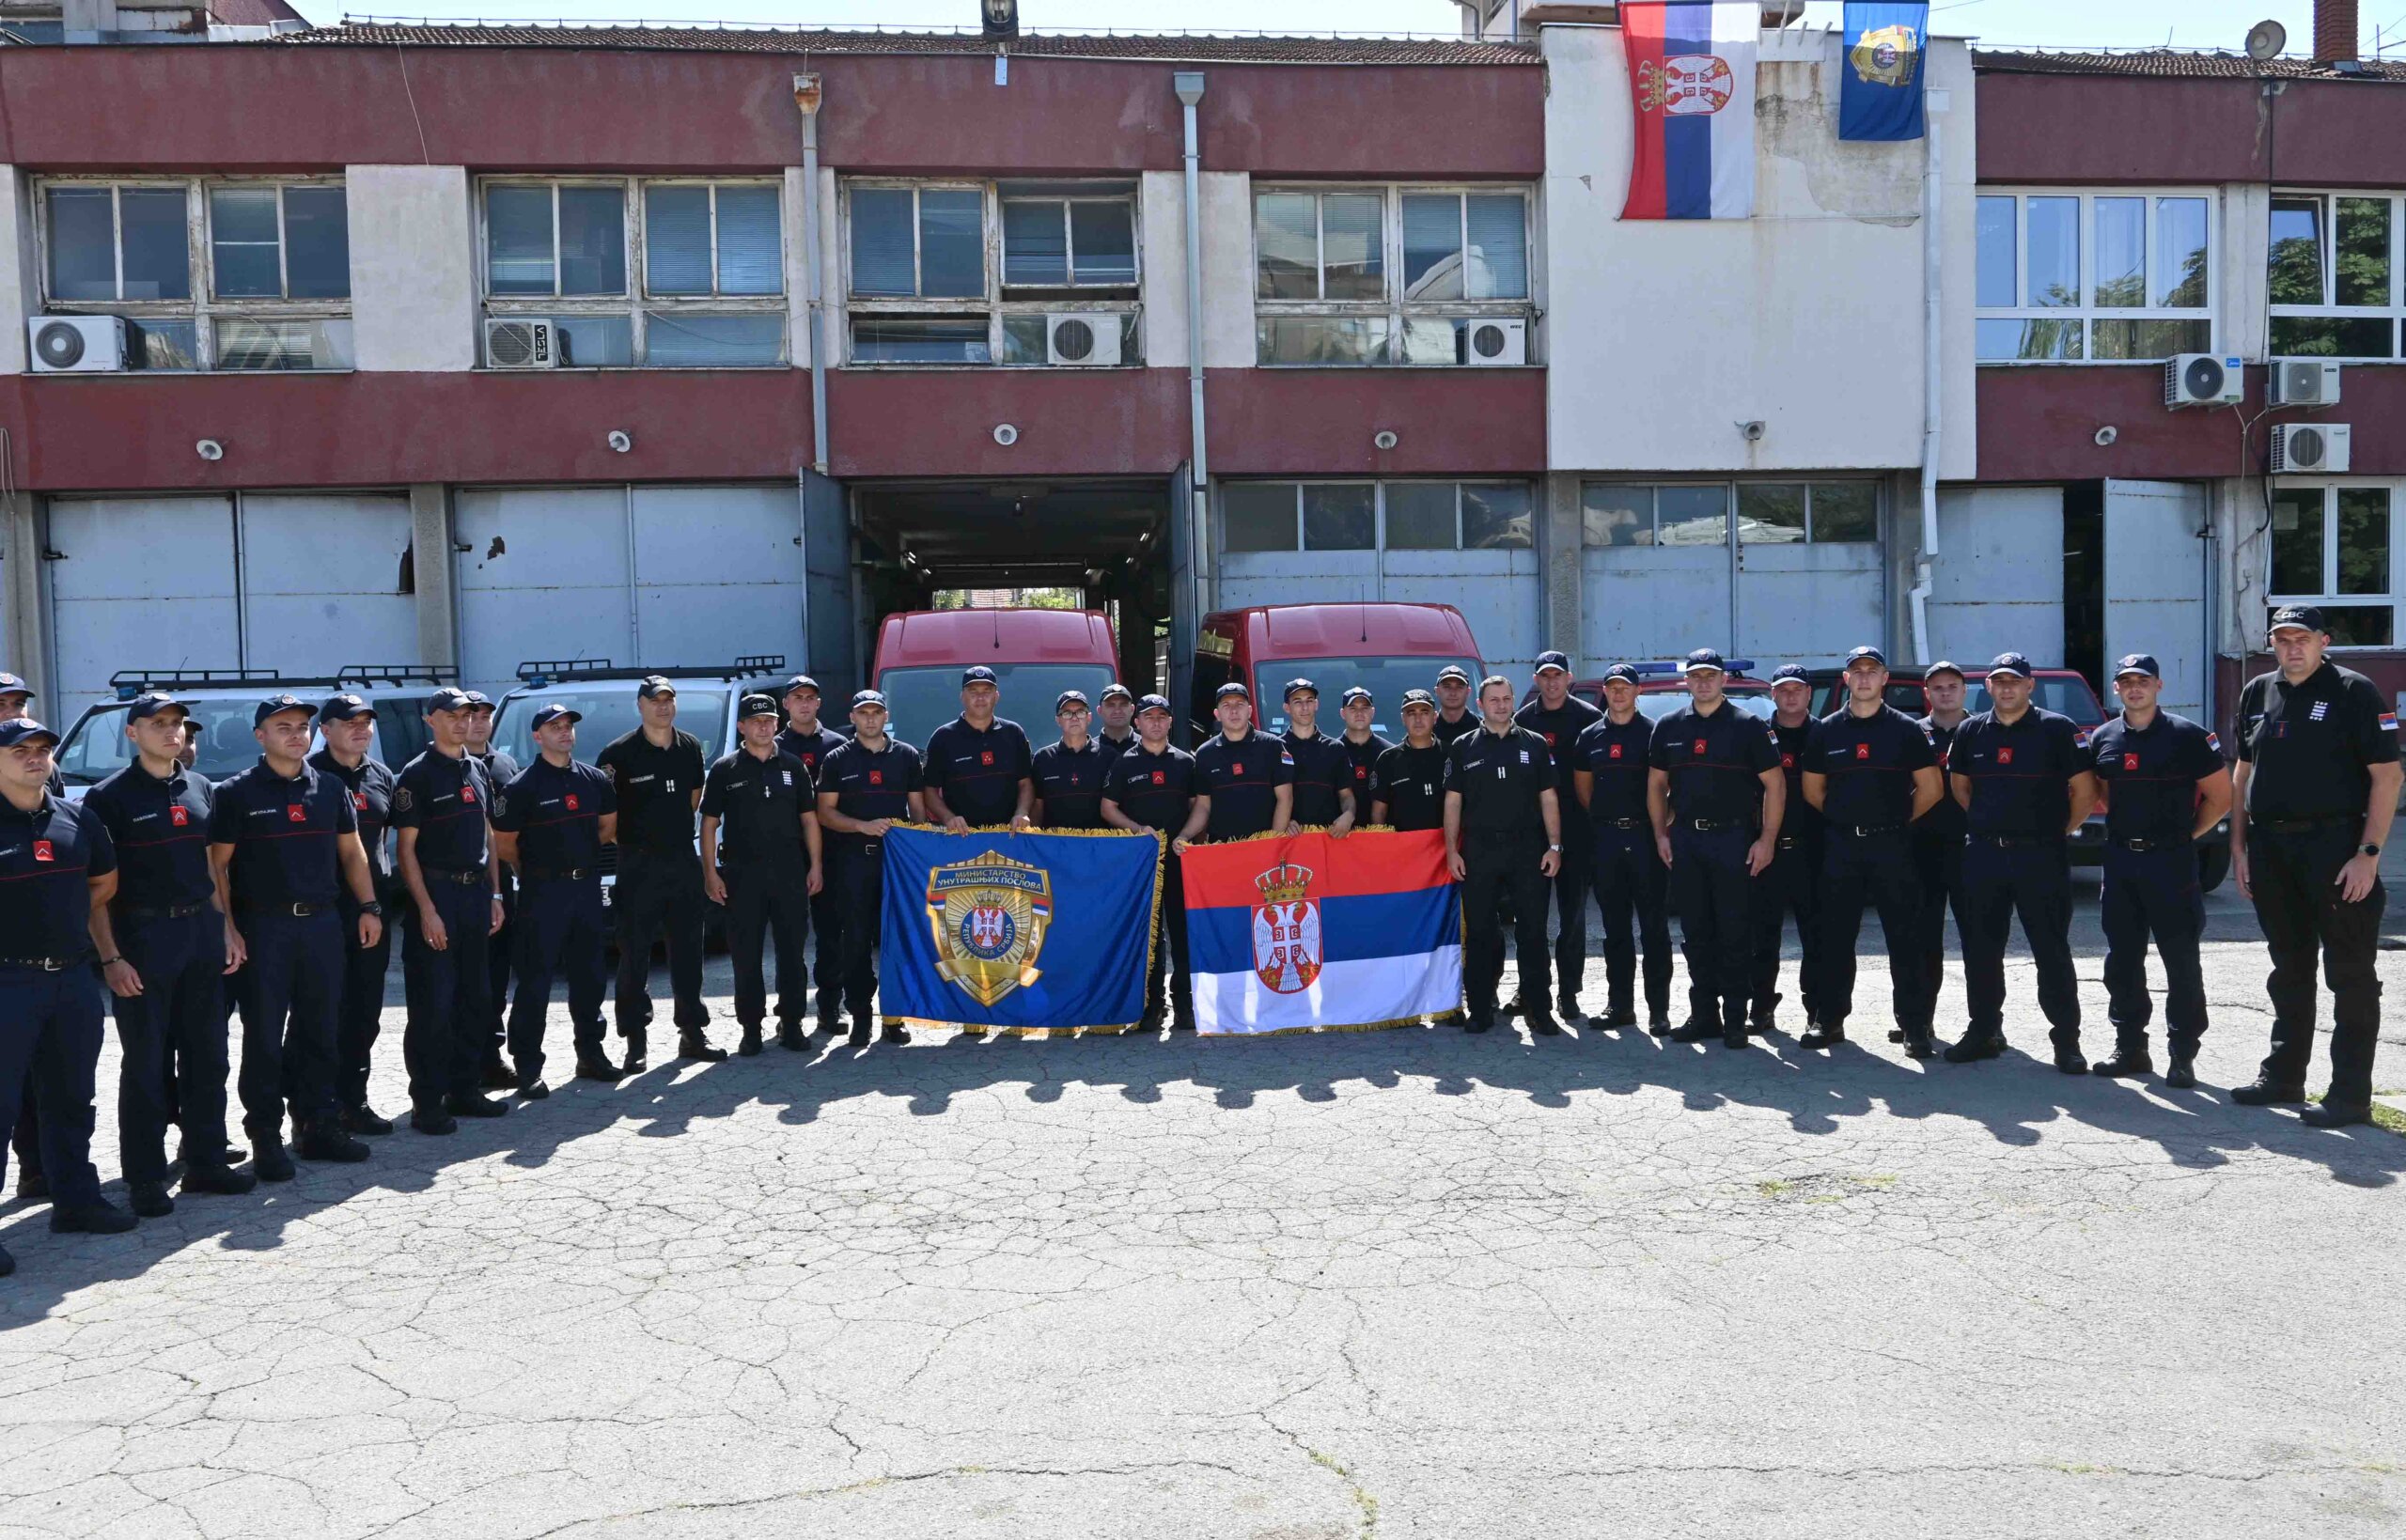 Vatrogasci-spasioci iz Srbije ponovo upućeni u Grčku da pomognu u gašenju požara 2